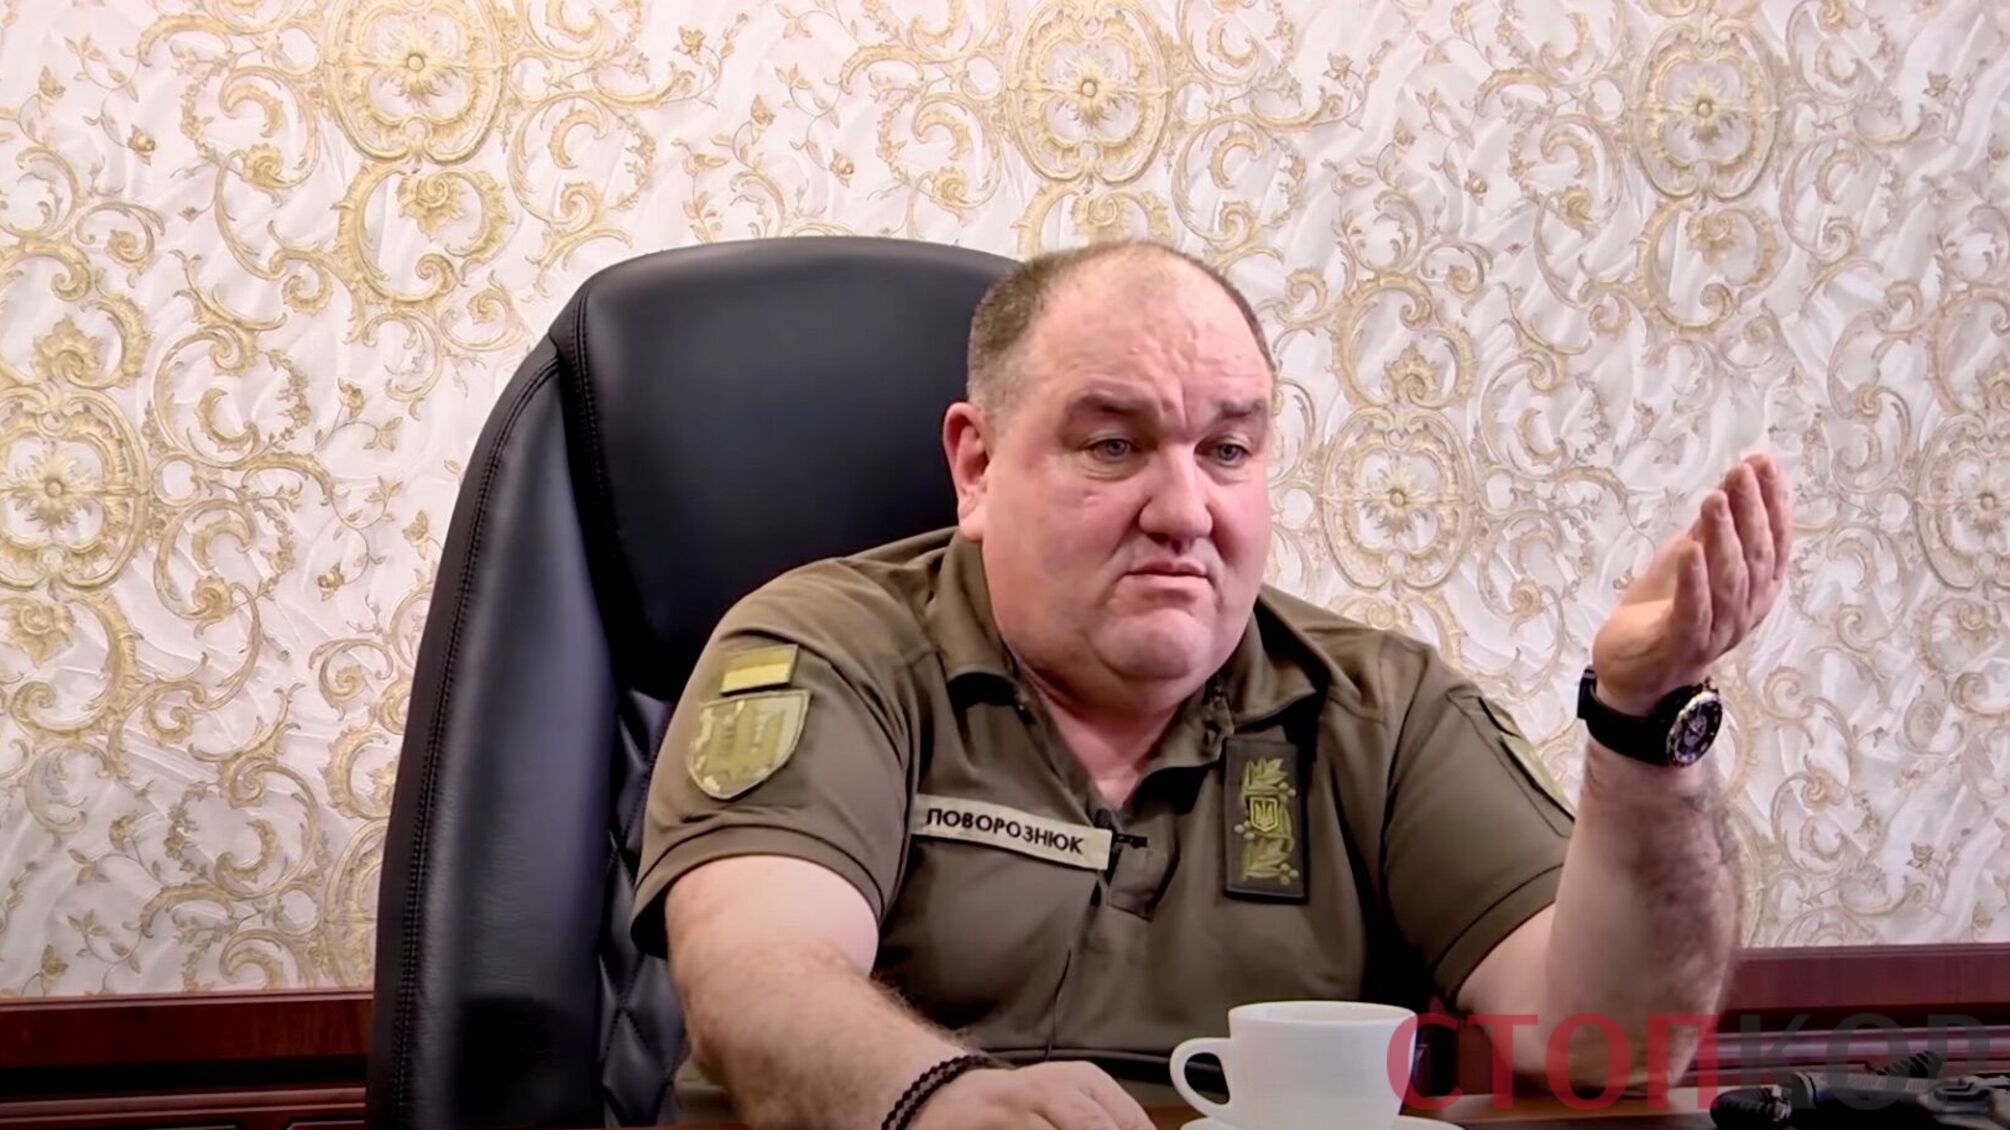 'Проститутка путина': Поворознюк резко высказался в сторону Лукашенко (видео)